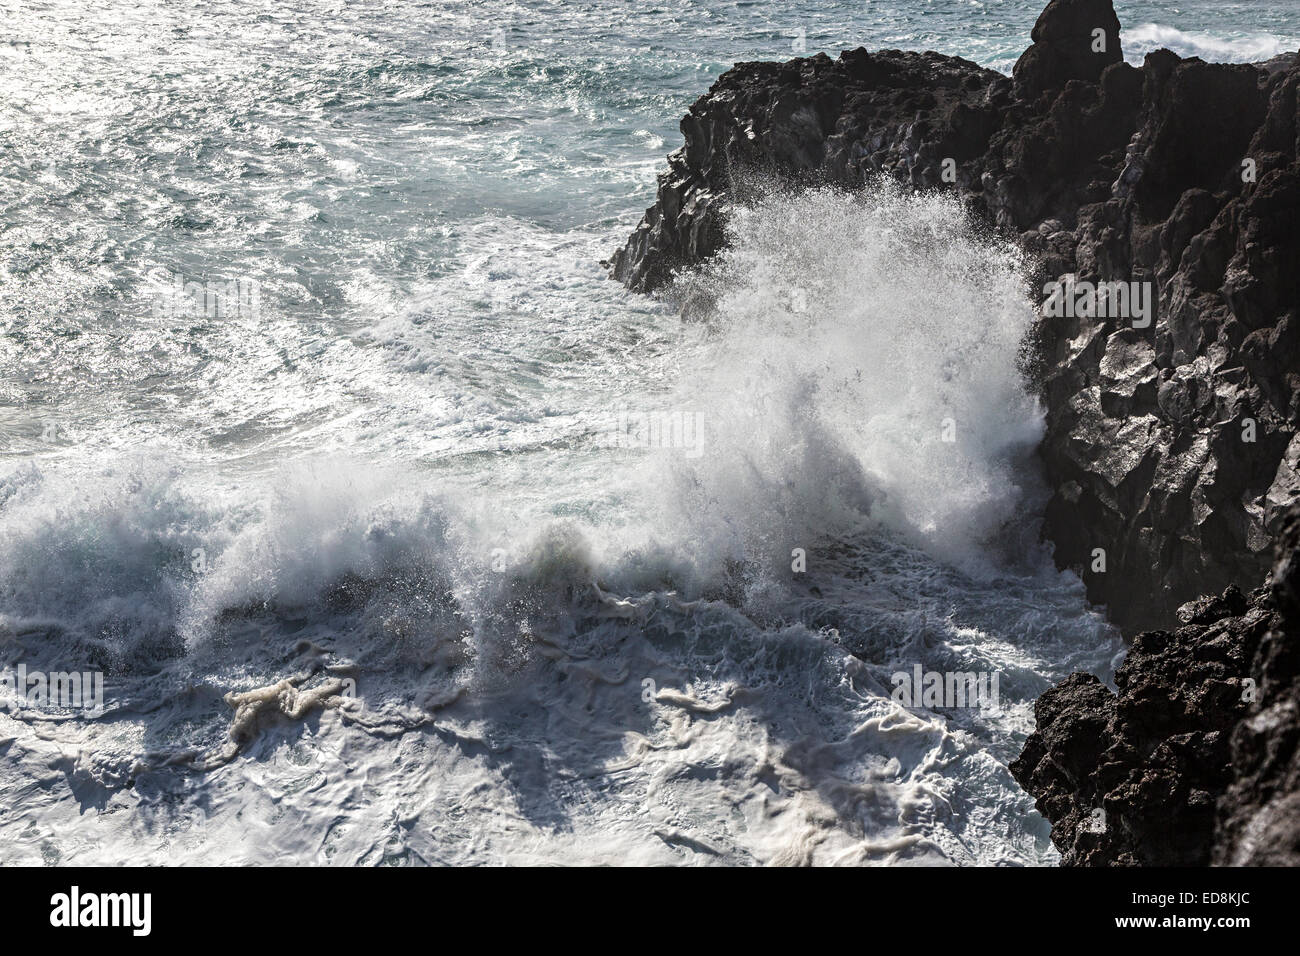 Rough seas on the coast at Los Hervideros, Lanzarote, Canary Islands, Spain Stock Photo